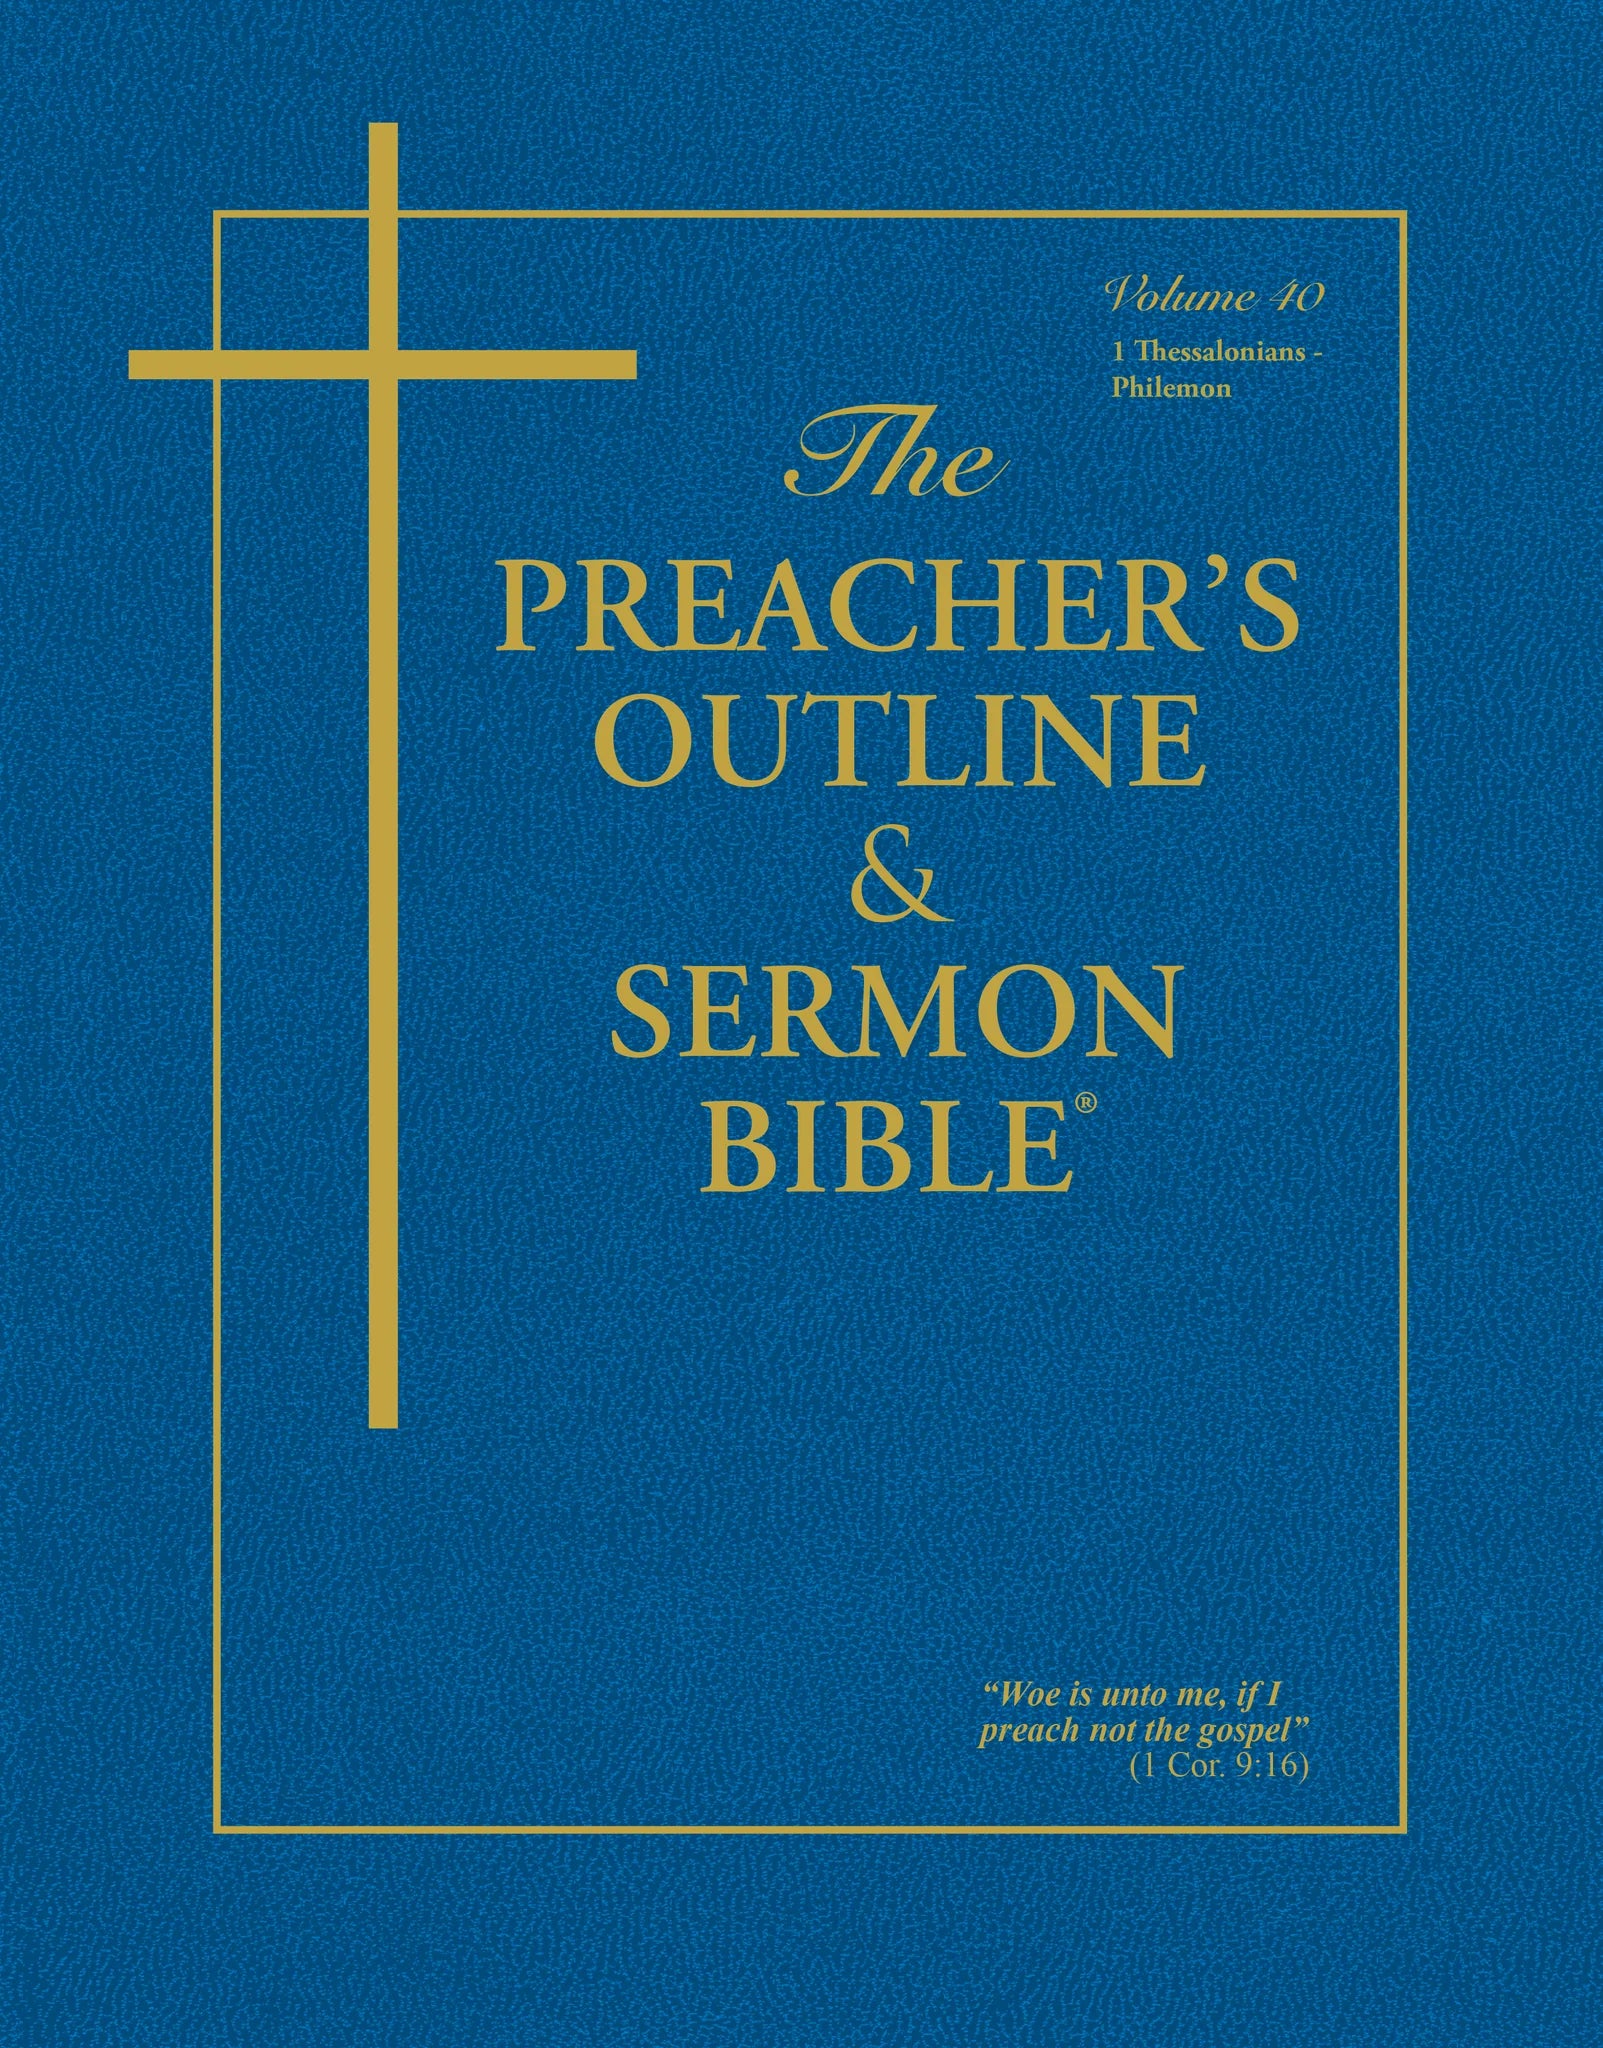 The Preacher's Outline & Sermon Bible - Vol. 40: 1 & 2 Thessalonians, 1 & 2 Timothy, Titus, Philemon (King James Version)